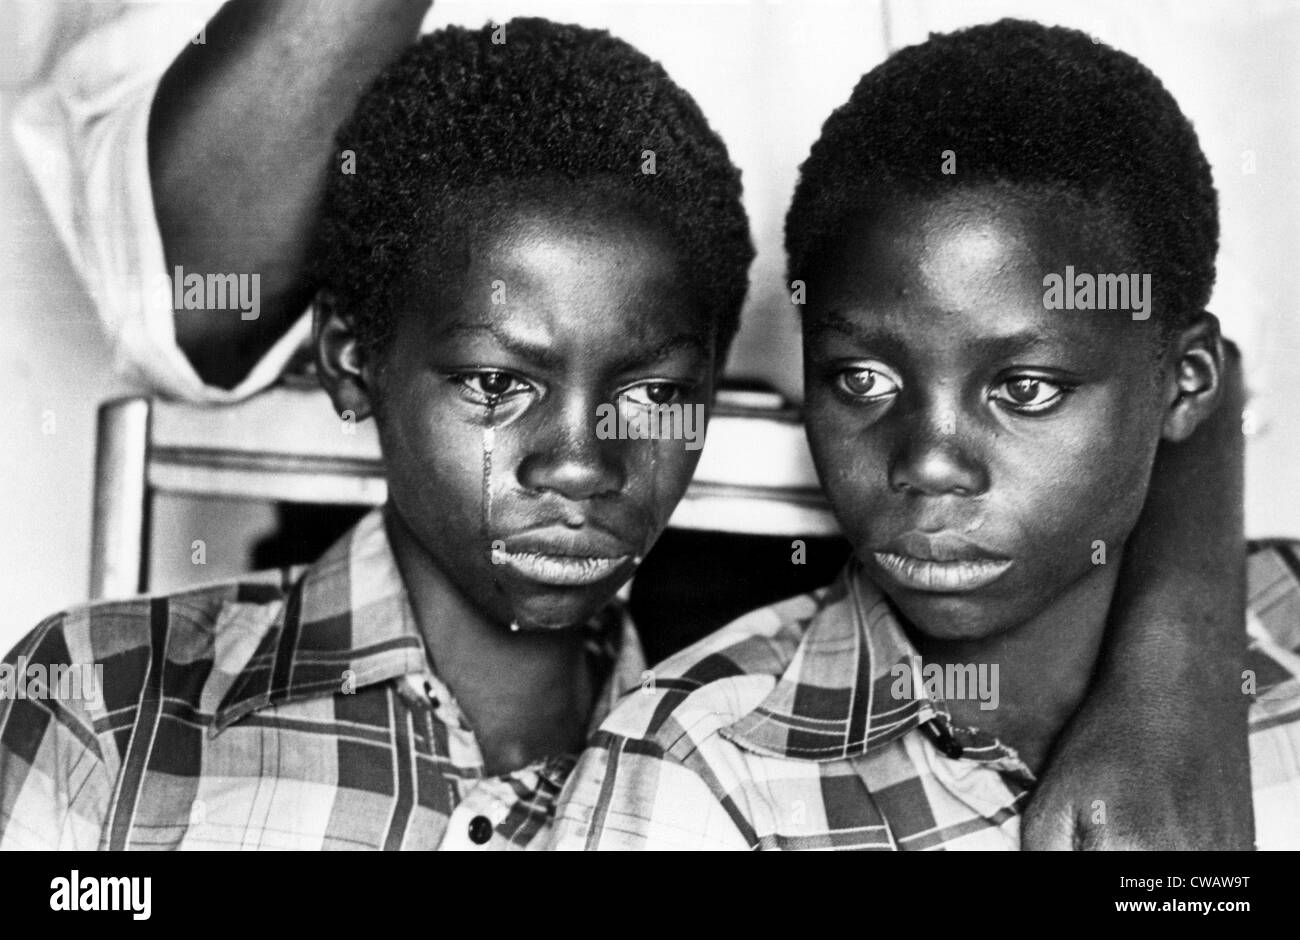 Zwei junge Männer in Südafrika unter Apartheid, von Peter Magubane Leben... Höflichkeit: CSU Archive / Everett Collection Stockfoto